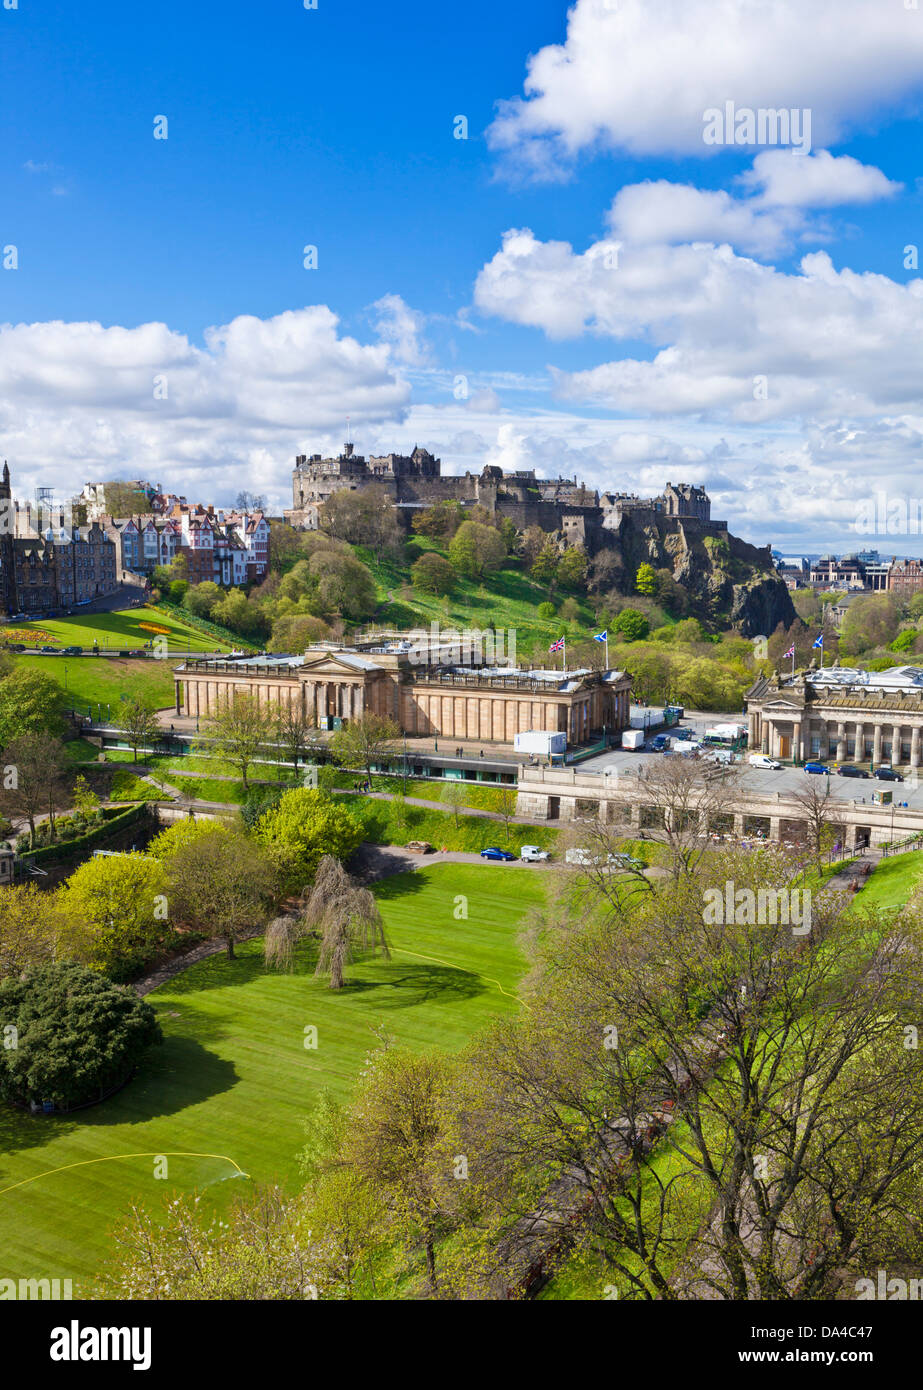 Blick auf Edinburgh Castle alte Stadtmuseen und Gärten im Zentrum Stadt Edinburgh Midlothian Schottland Großbritannien GB EU Europa Stockfoto